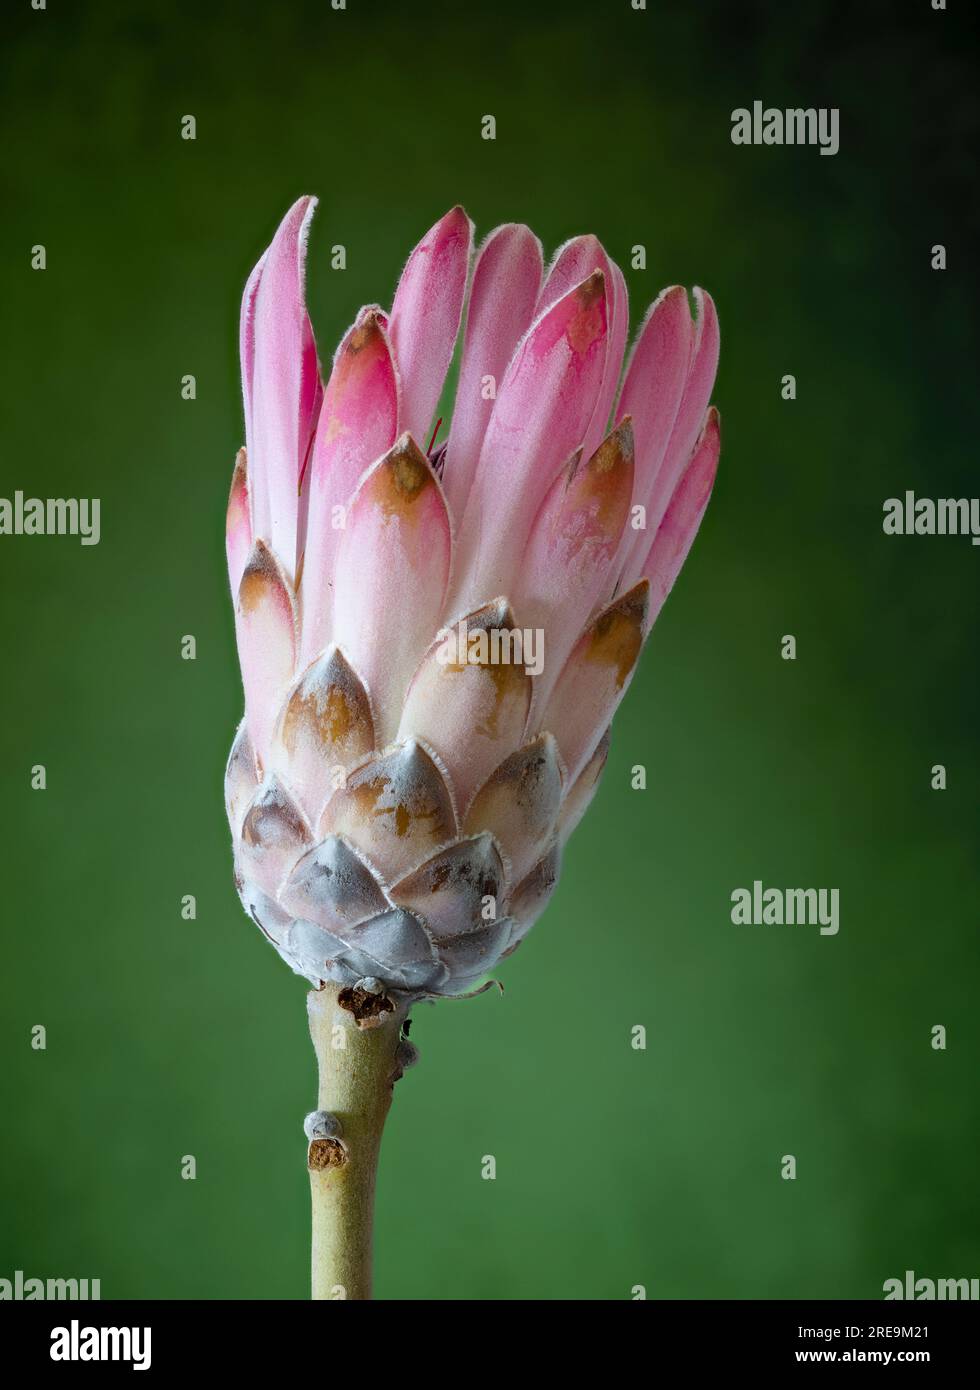 Une fleur spectaculaire et très inhabituelle d'une plante Protea, (Protea aristata), photographiée sur un fond vert Uni Banque D'Images